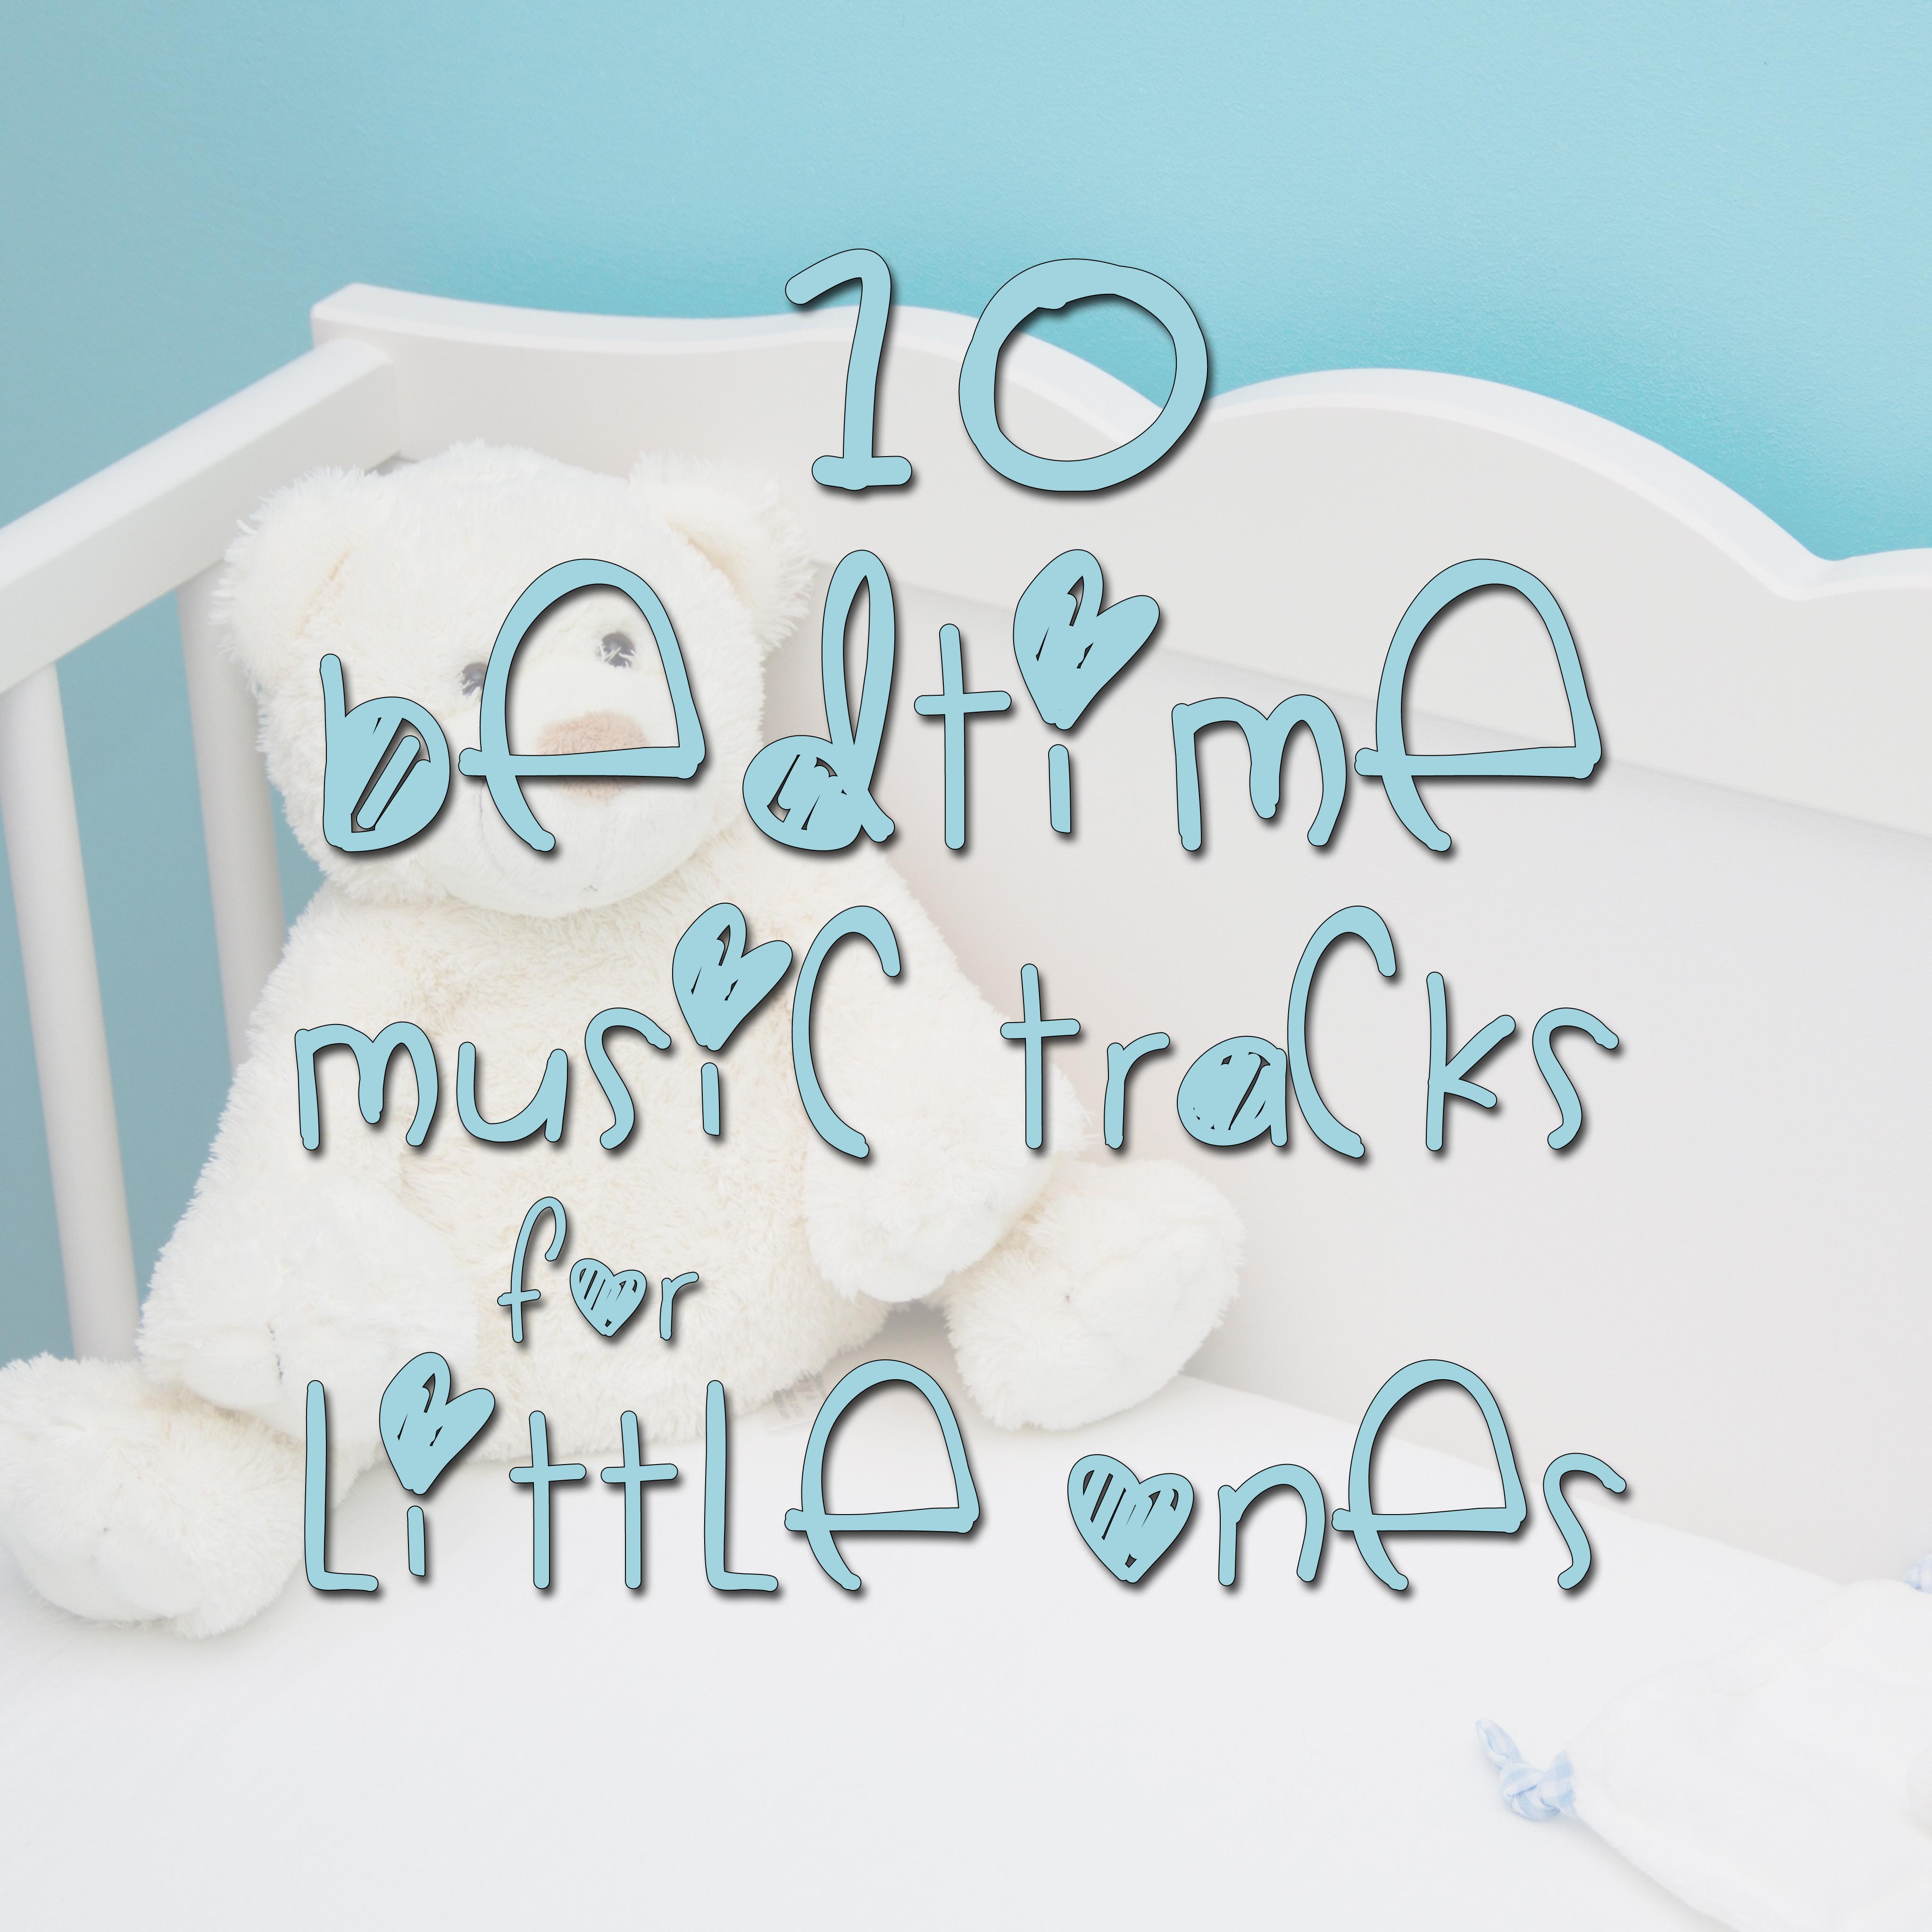 10 Bedtime Music Tracks for Little Ones - Help Kids Relax